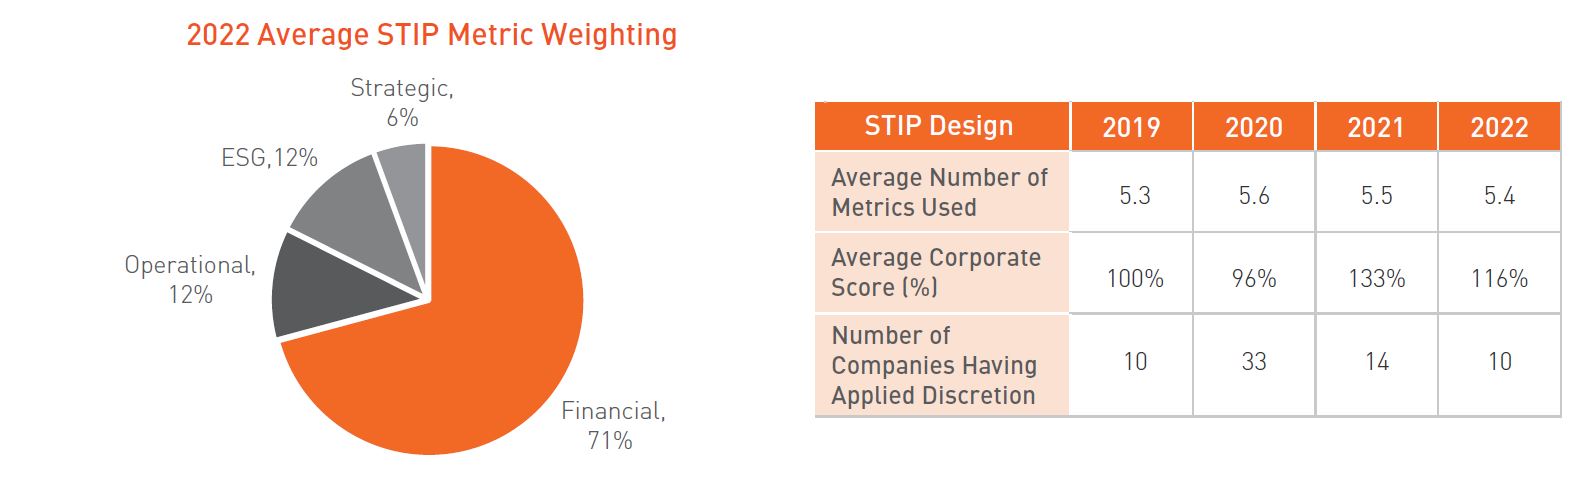 2022 Average STIP Metric Weighting